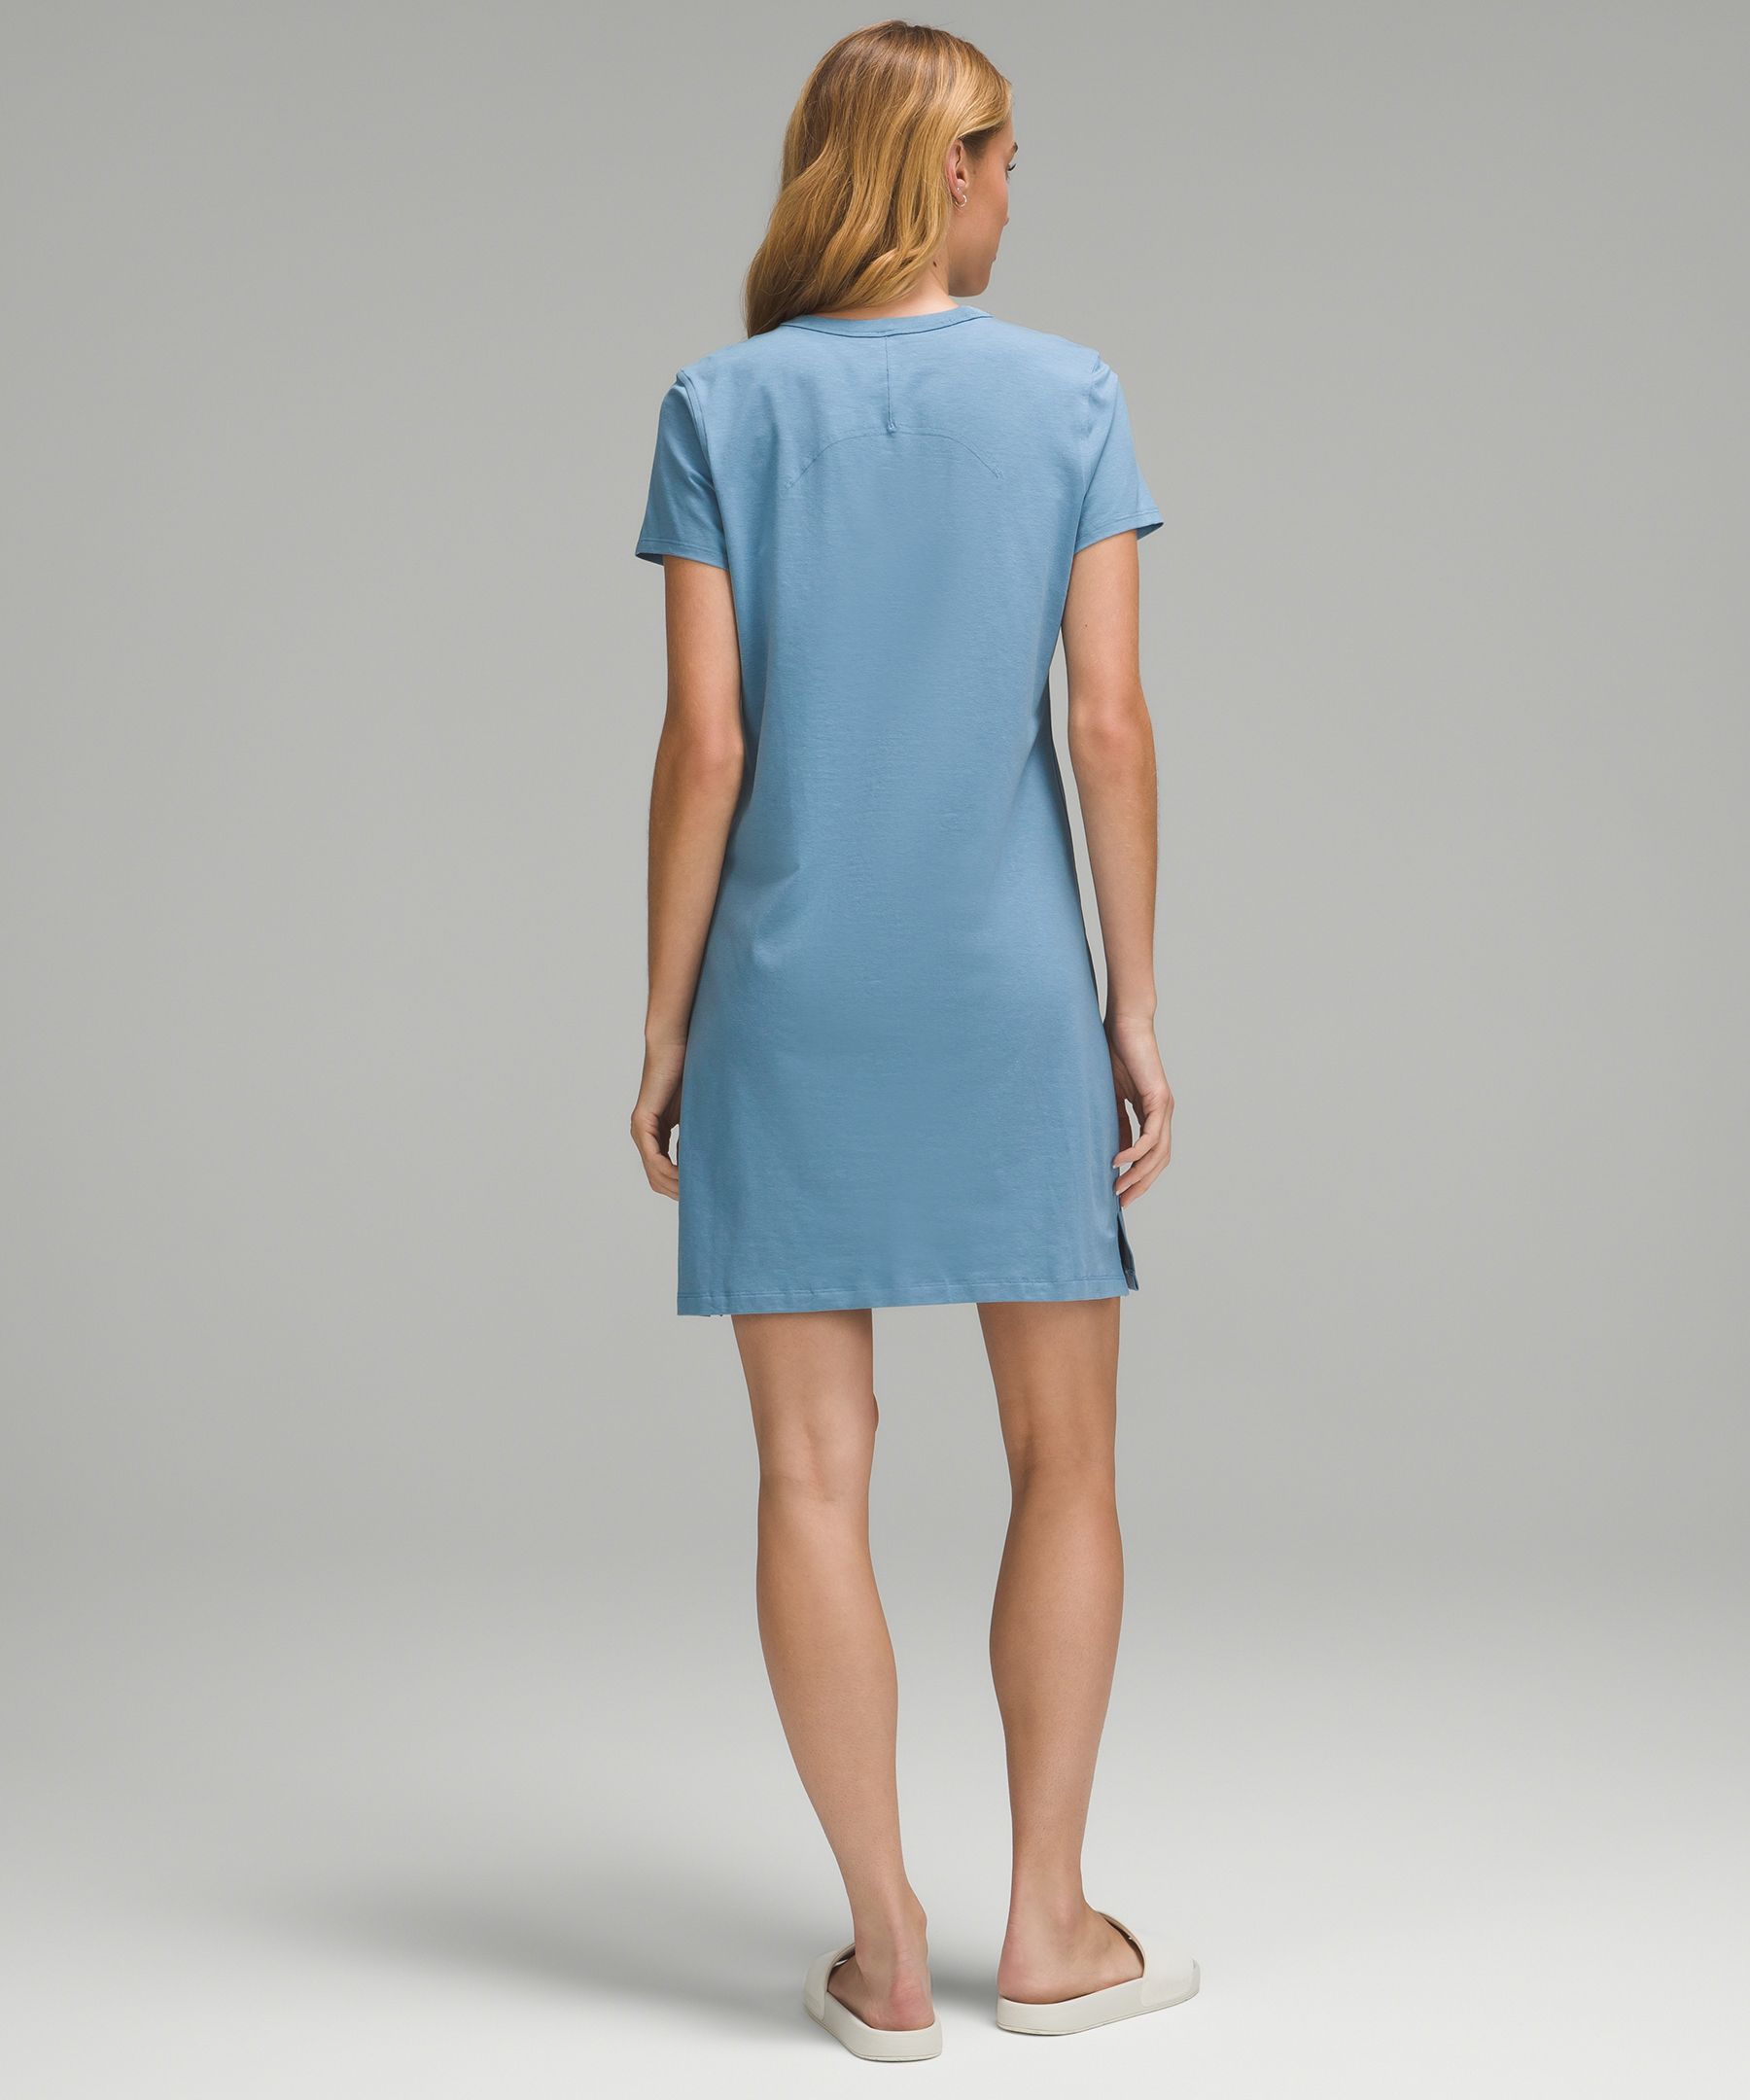 Lululemon Classic-Fit Cotton-Blend T-Shirt Dress. 2